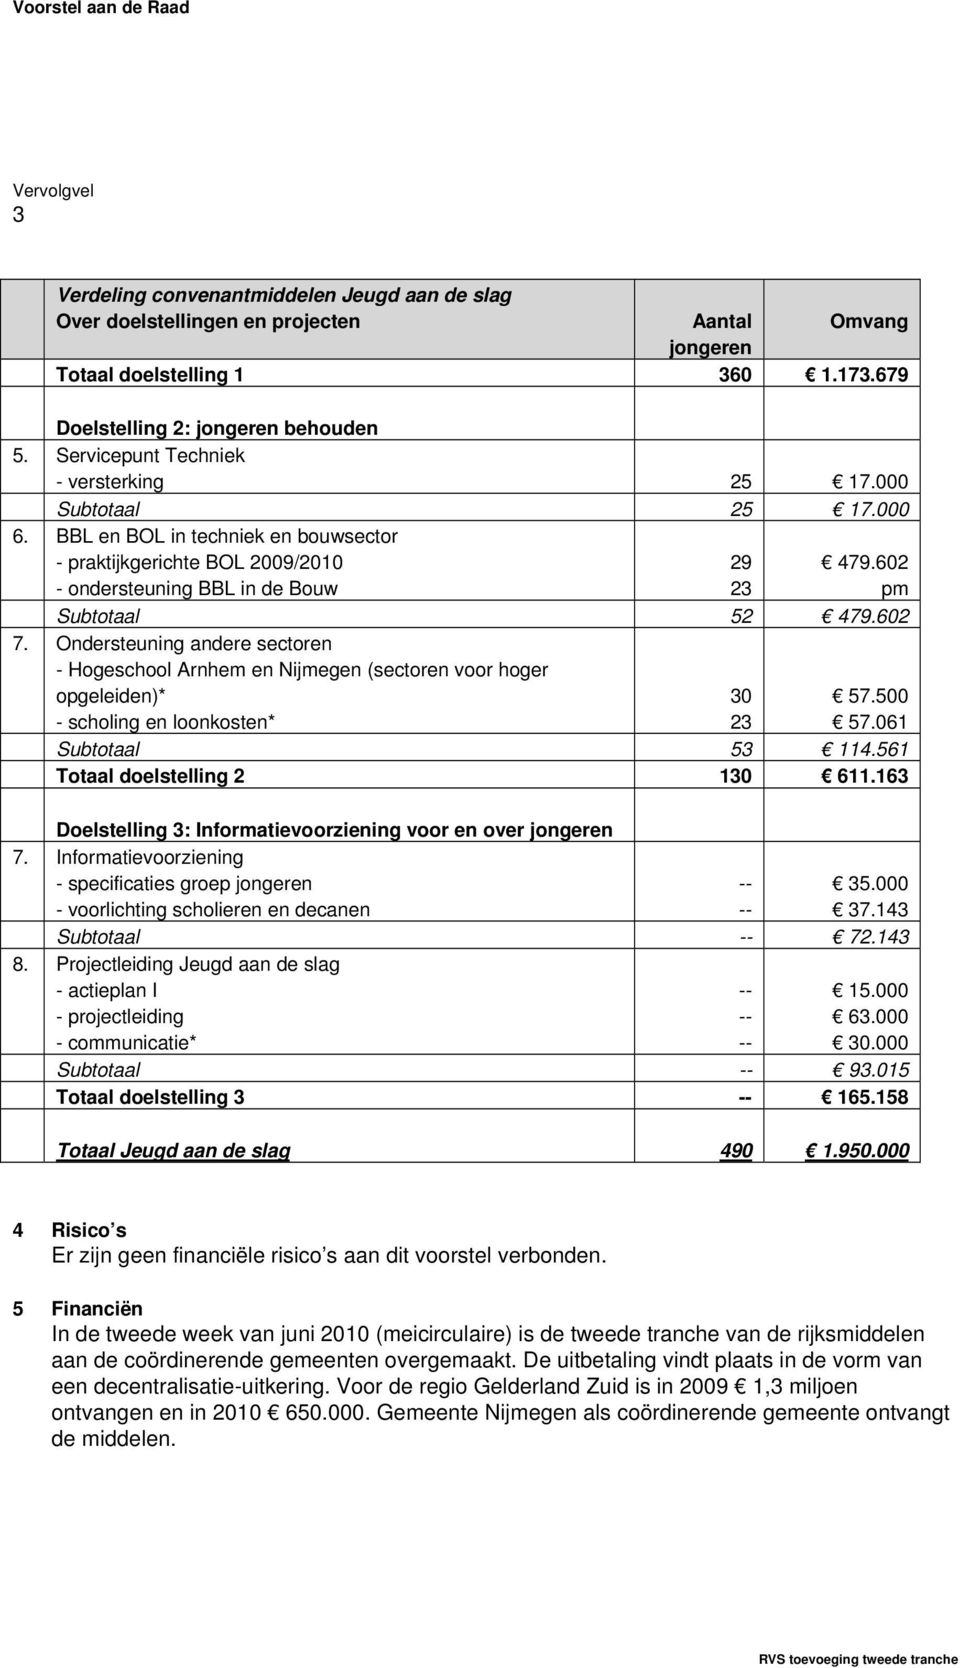 Ondersteuning andere sectoren - Hogeschool Arnhem en Nijmegen (sectoren voor hoger opgeleiden)* - scholing en loonkosten* 3 23 57.5 57.61 Subtotaal 53 114.561 Totaal doelstelling 2 13 611.163 7. 8.